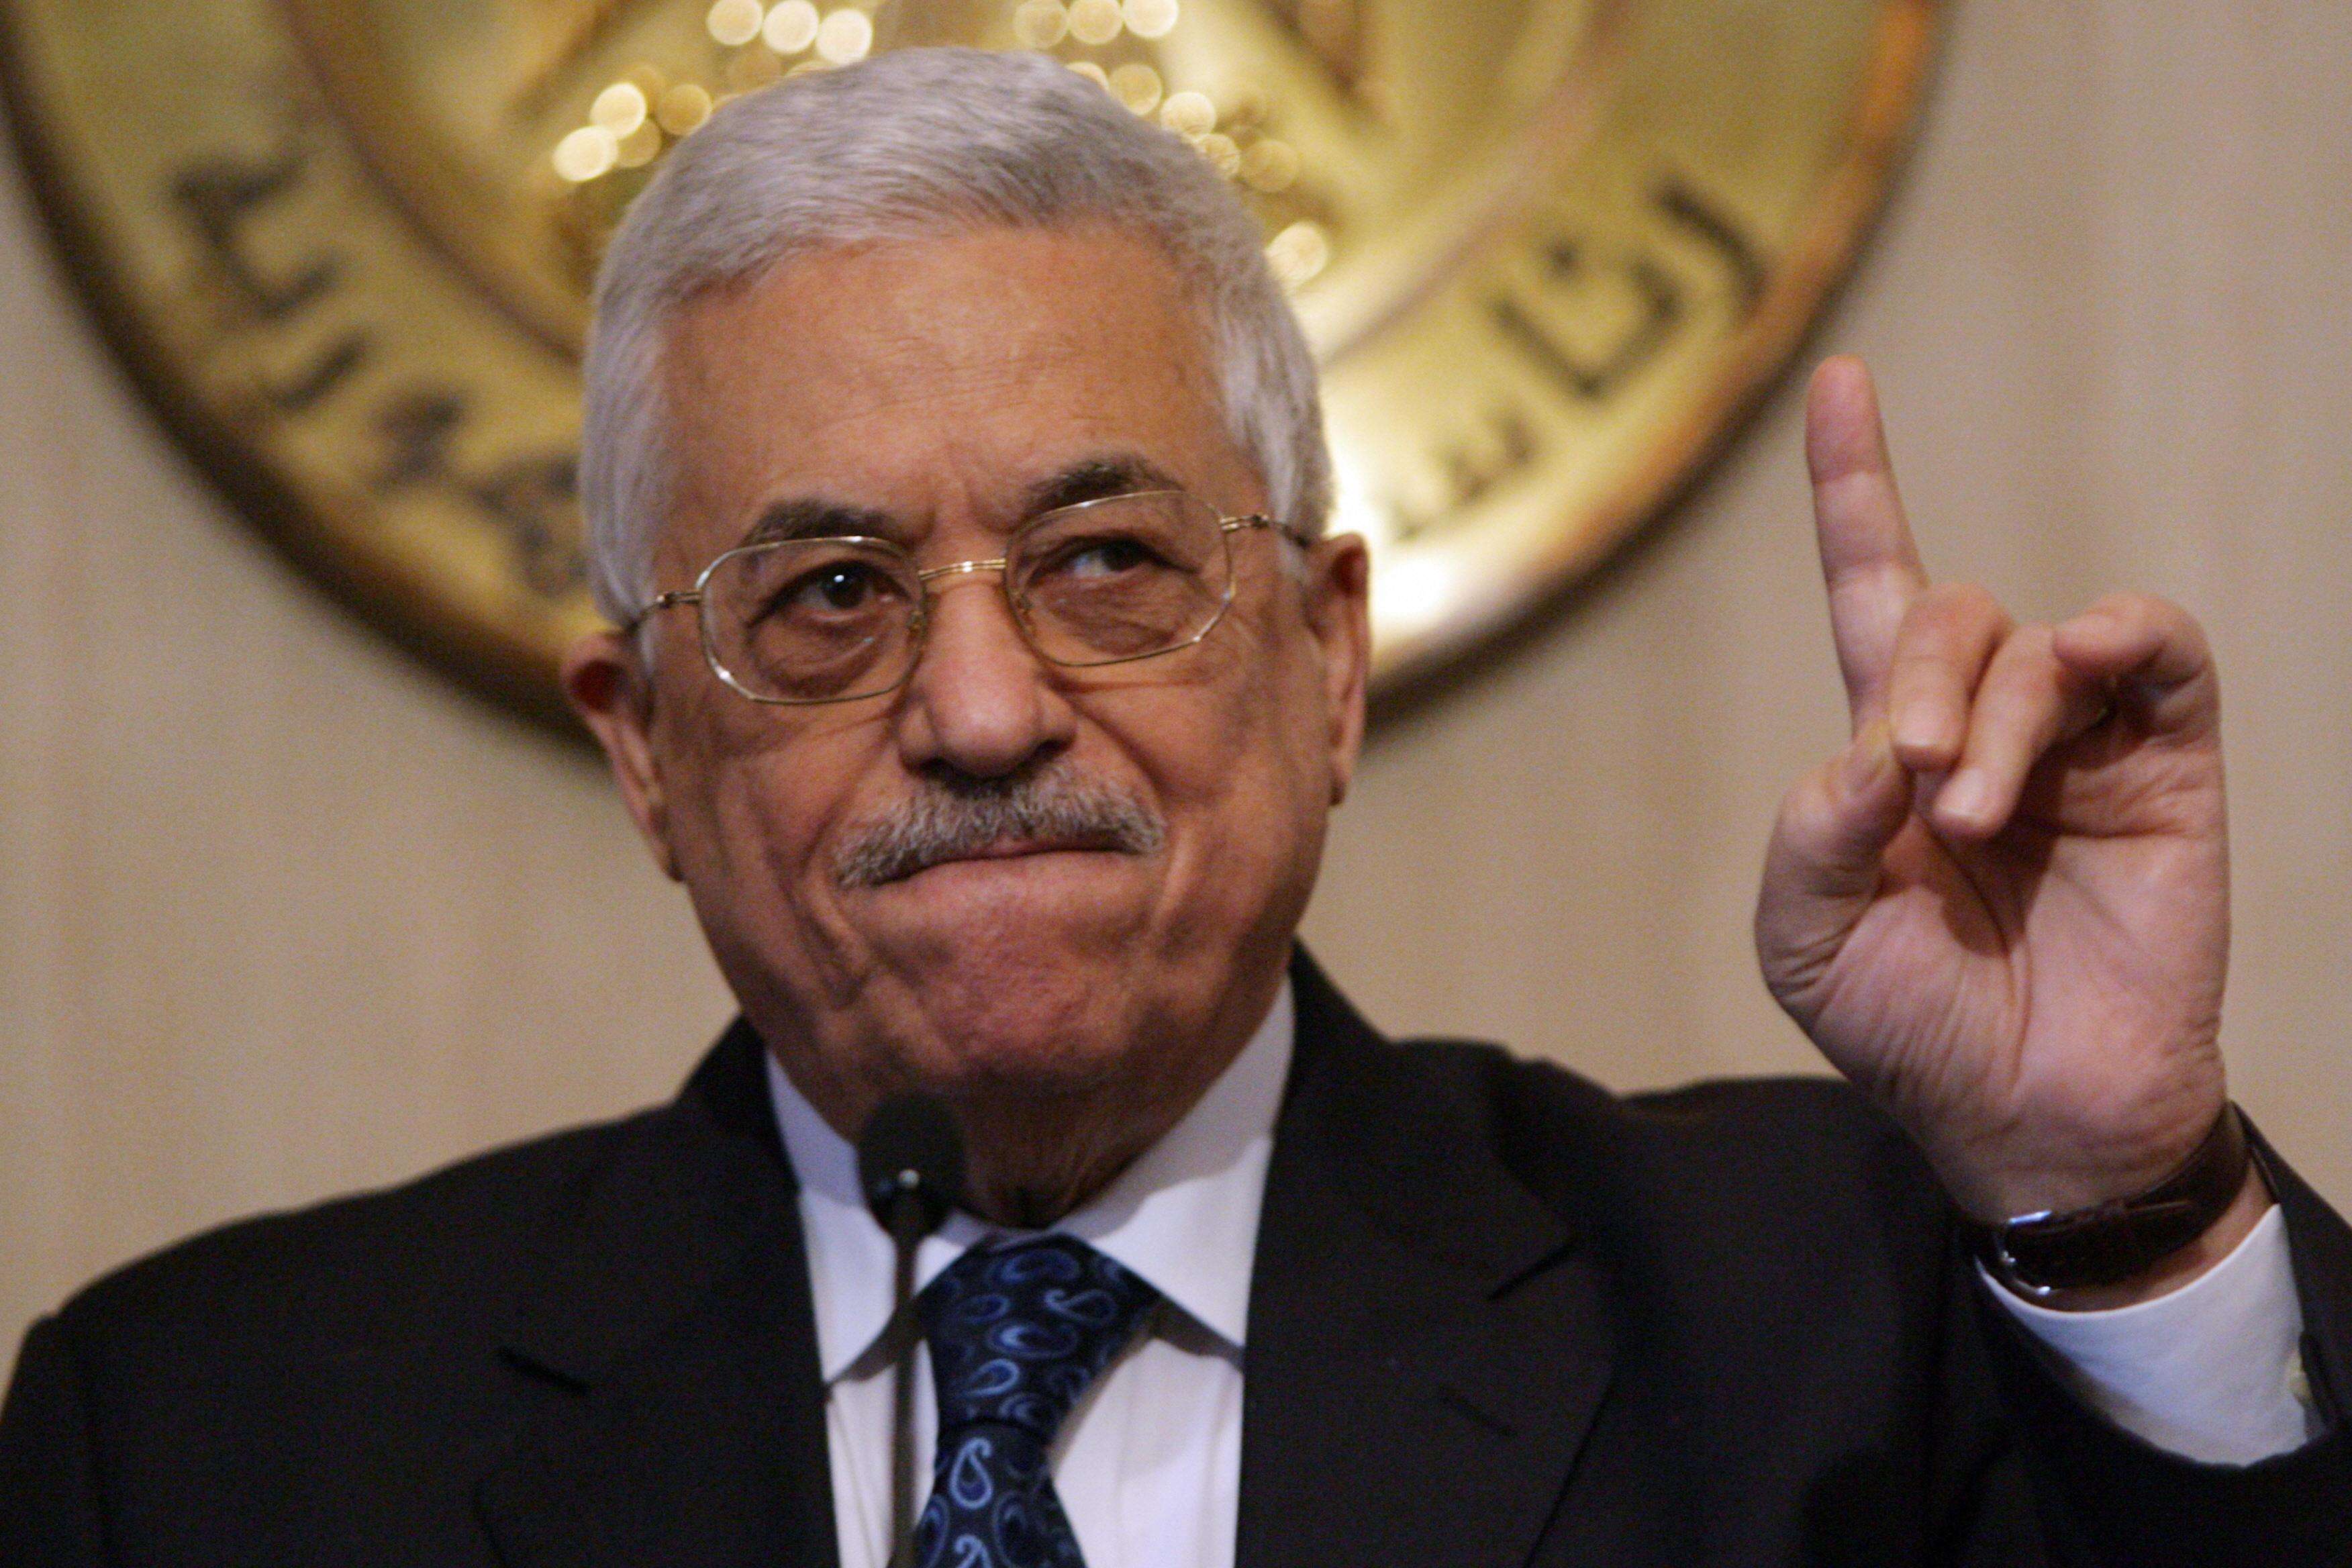 巴勒斯坦国总统阿巴斯法塔赫施压的同时,哈马斯长期面临的合法性问题